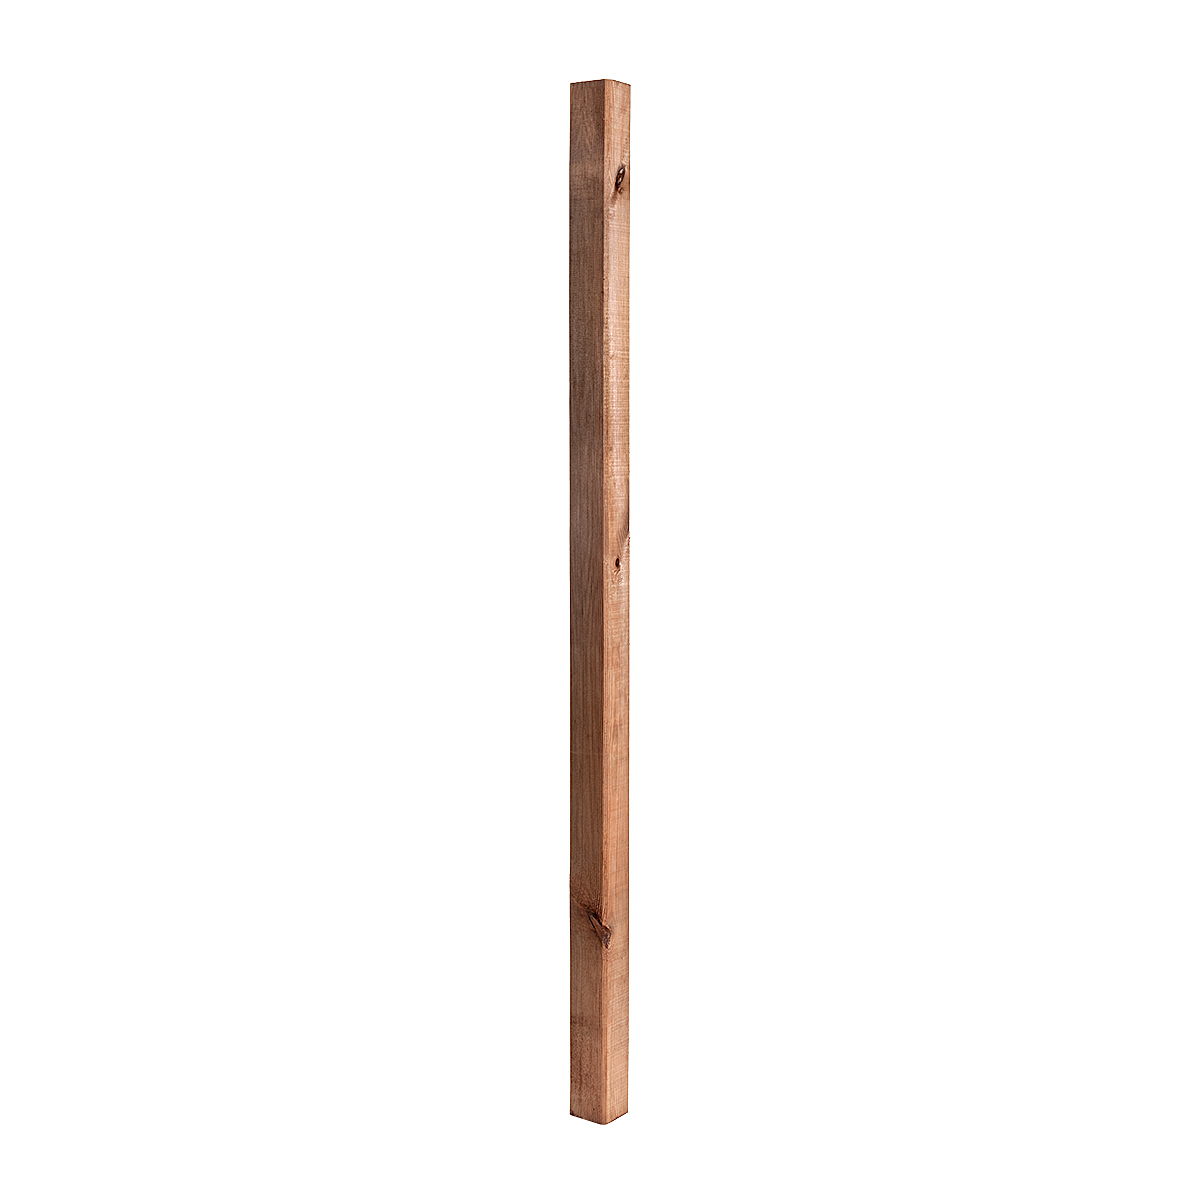 1 pz POSTA IN LEGNO 7cm x 7cm x 180cm palo in legno squadrato per recinzione giardino